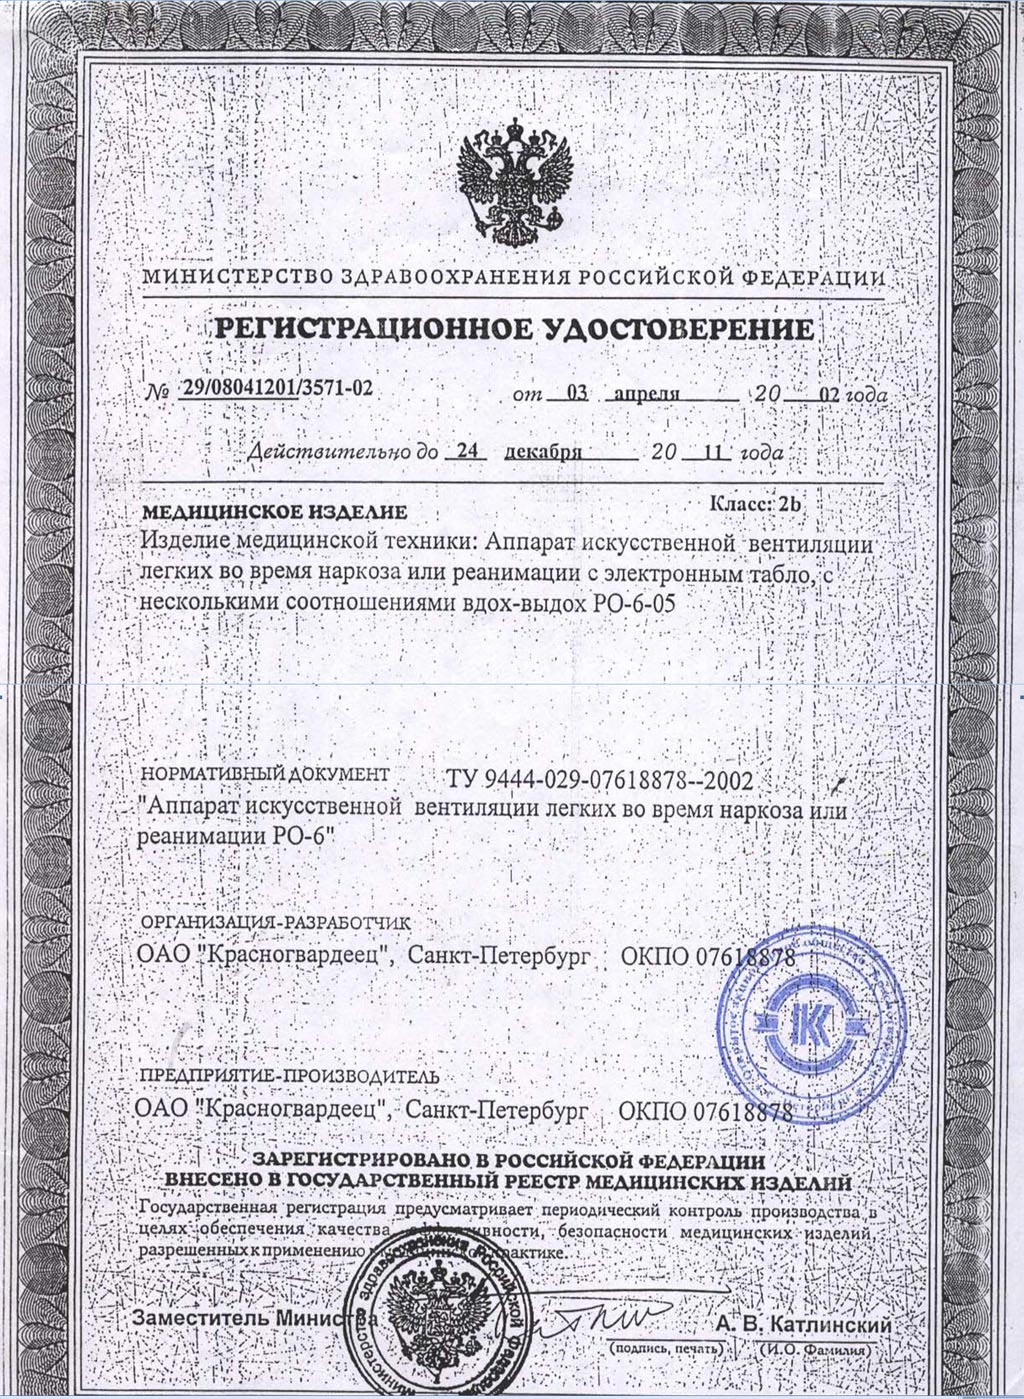 сертификат РО-6-05 аппарат ИВЛ